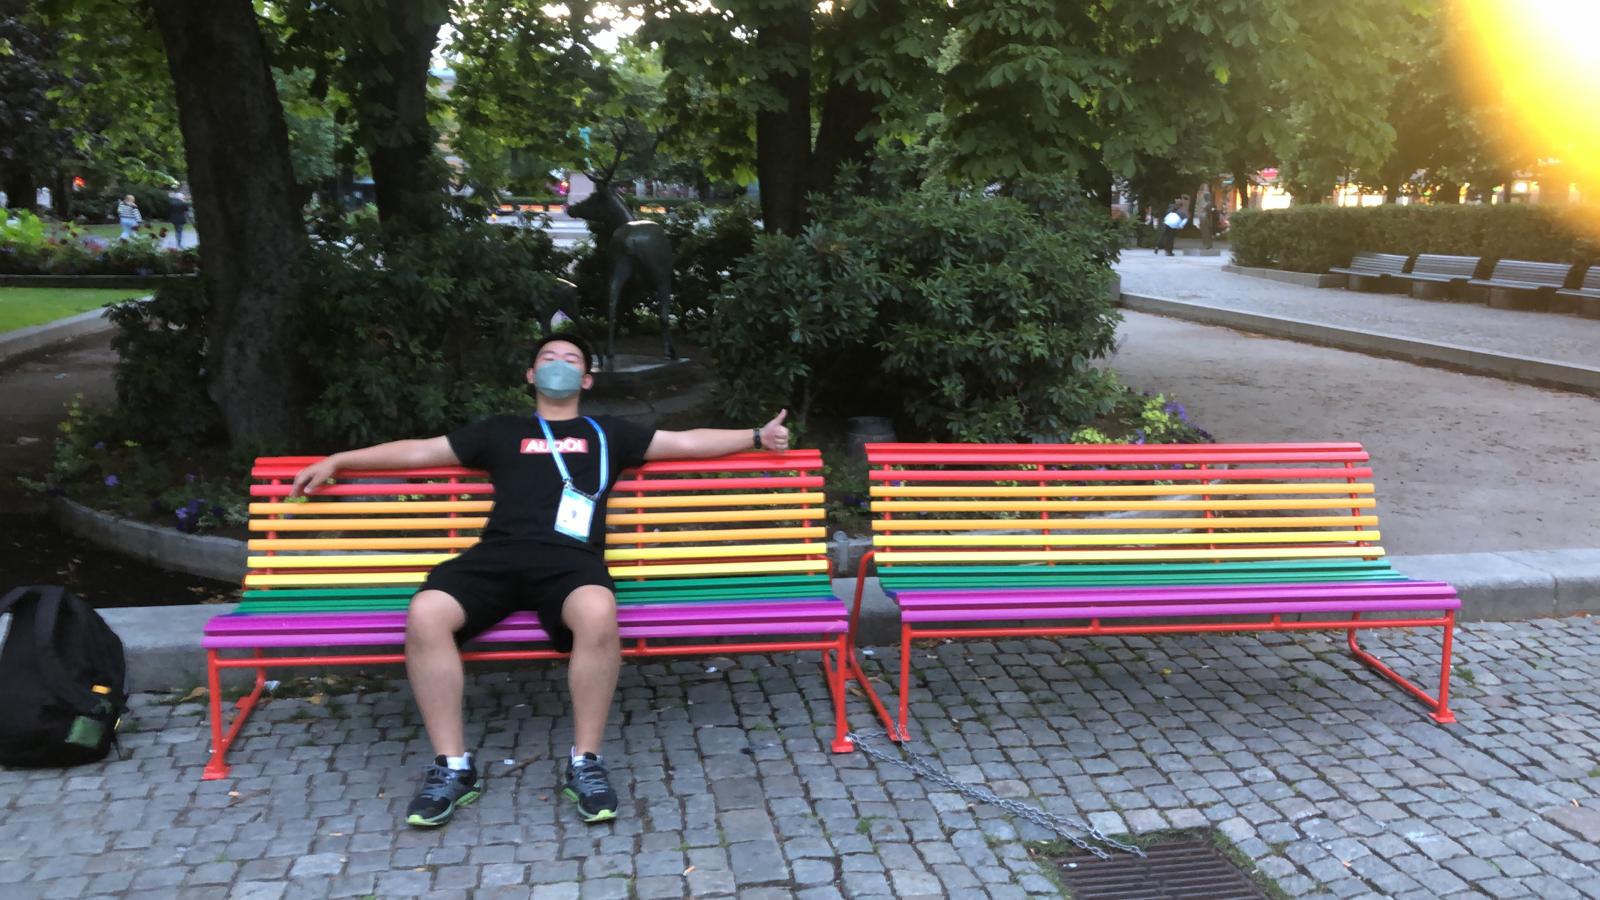 Eric on a rainbow bench